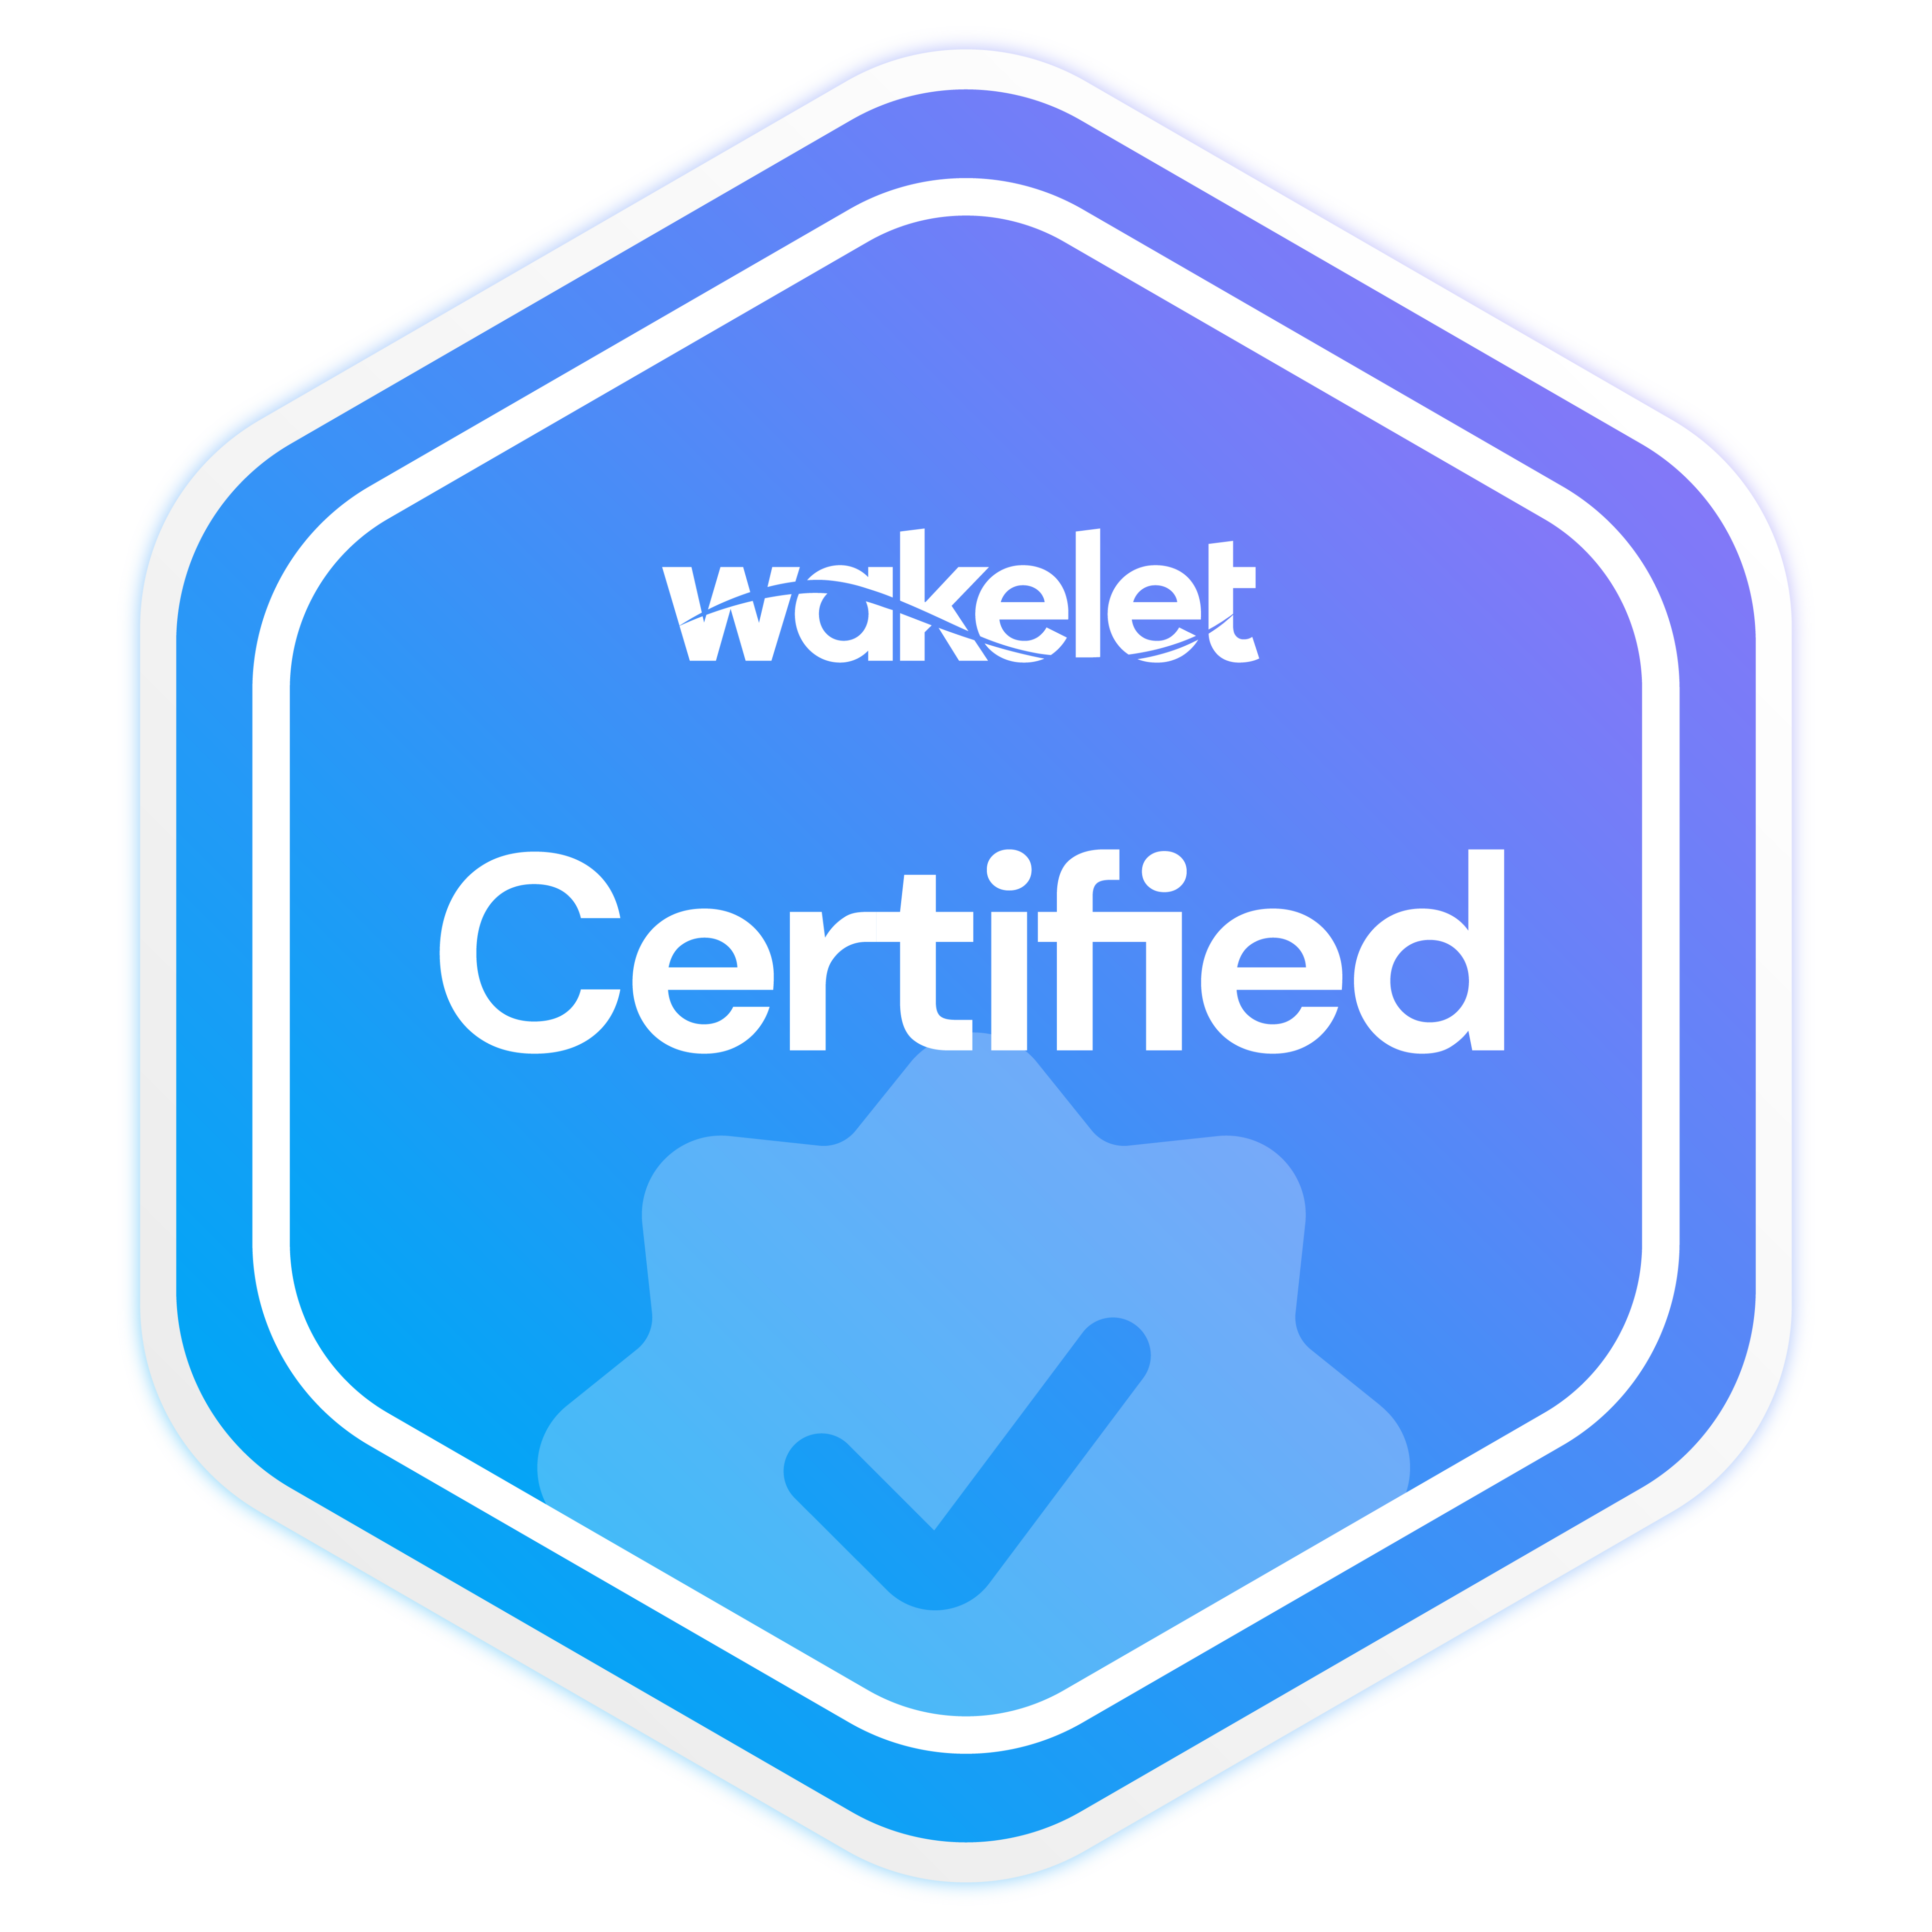 Wakelet Certified